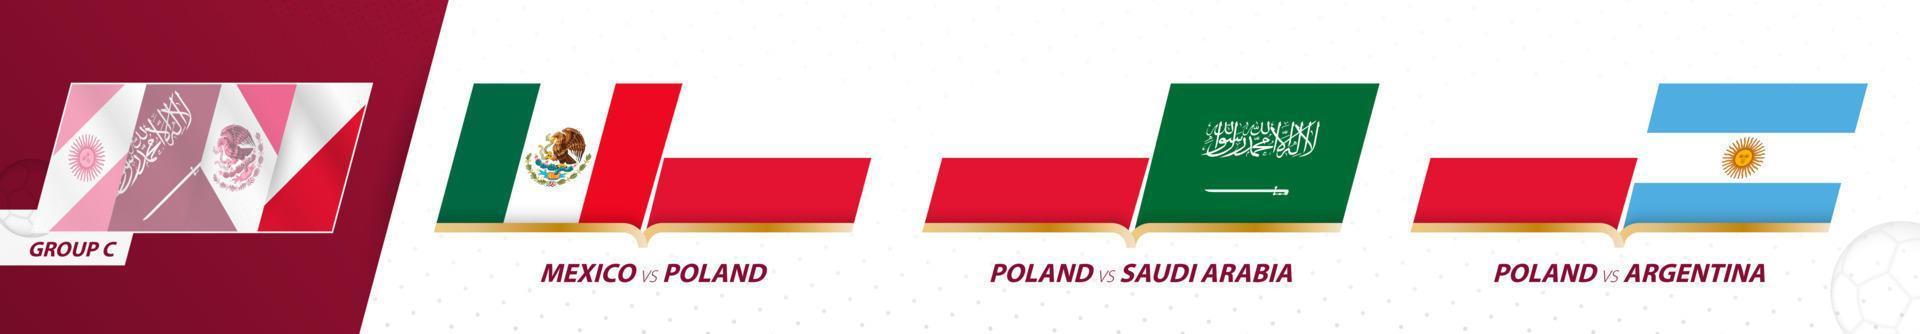 Polonia calcio squadra Giochi nel gruppo c di internazionale calcio torneo 2022. vettore